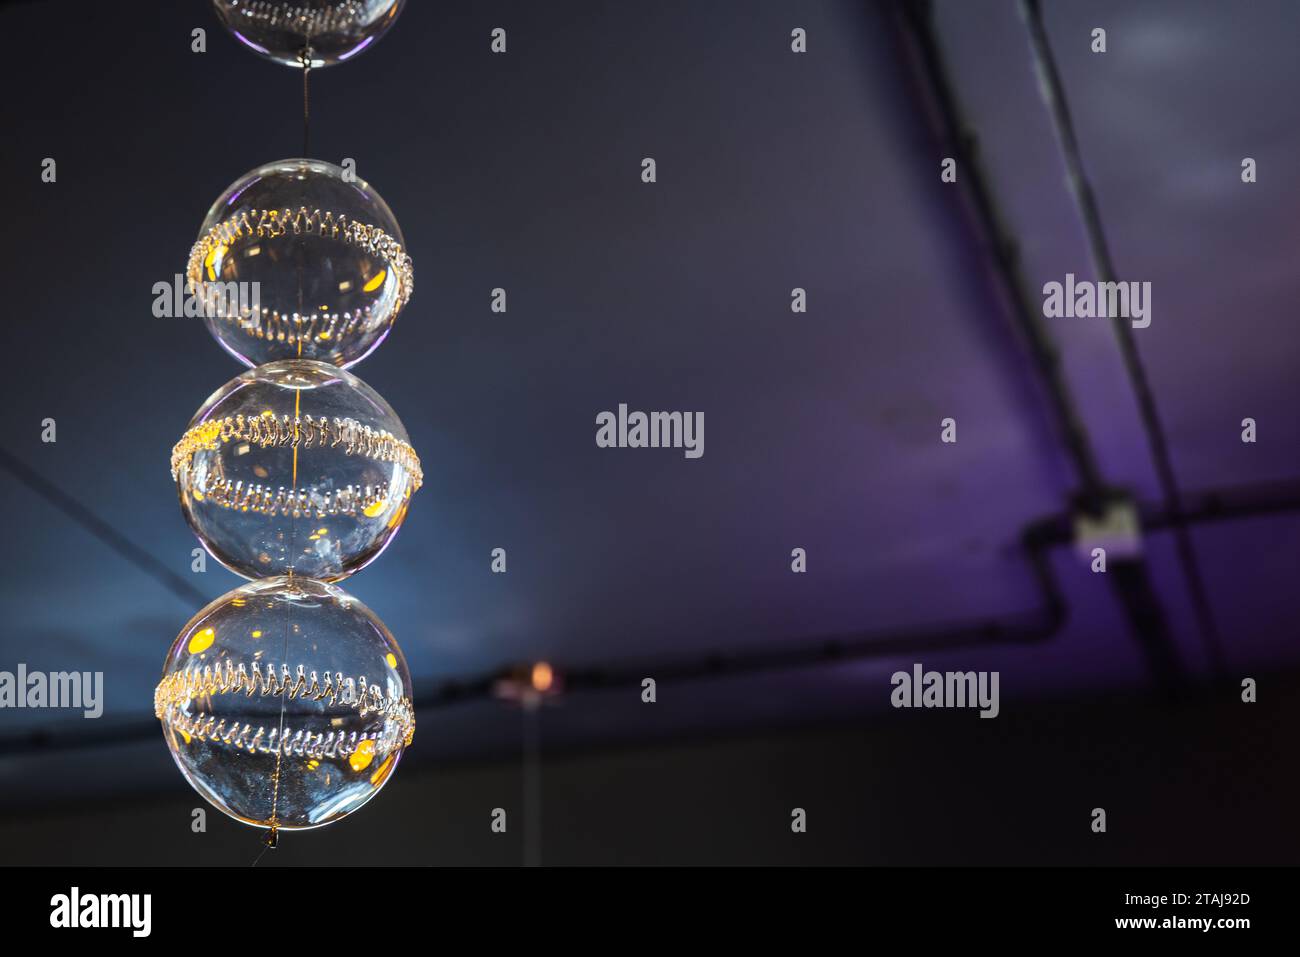 Weihnachtsdekoration, transparente Glaskugeln hängen in einem dunklen Raum Stockfoto